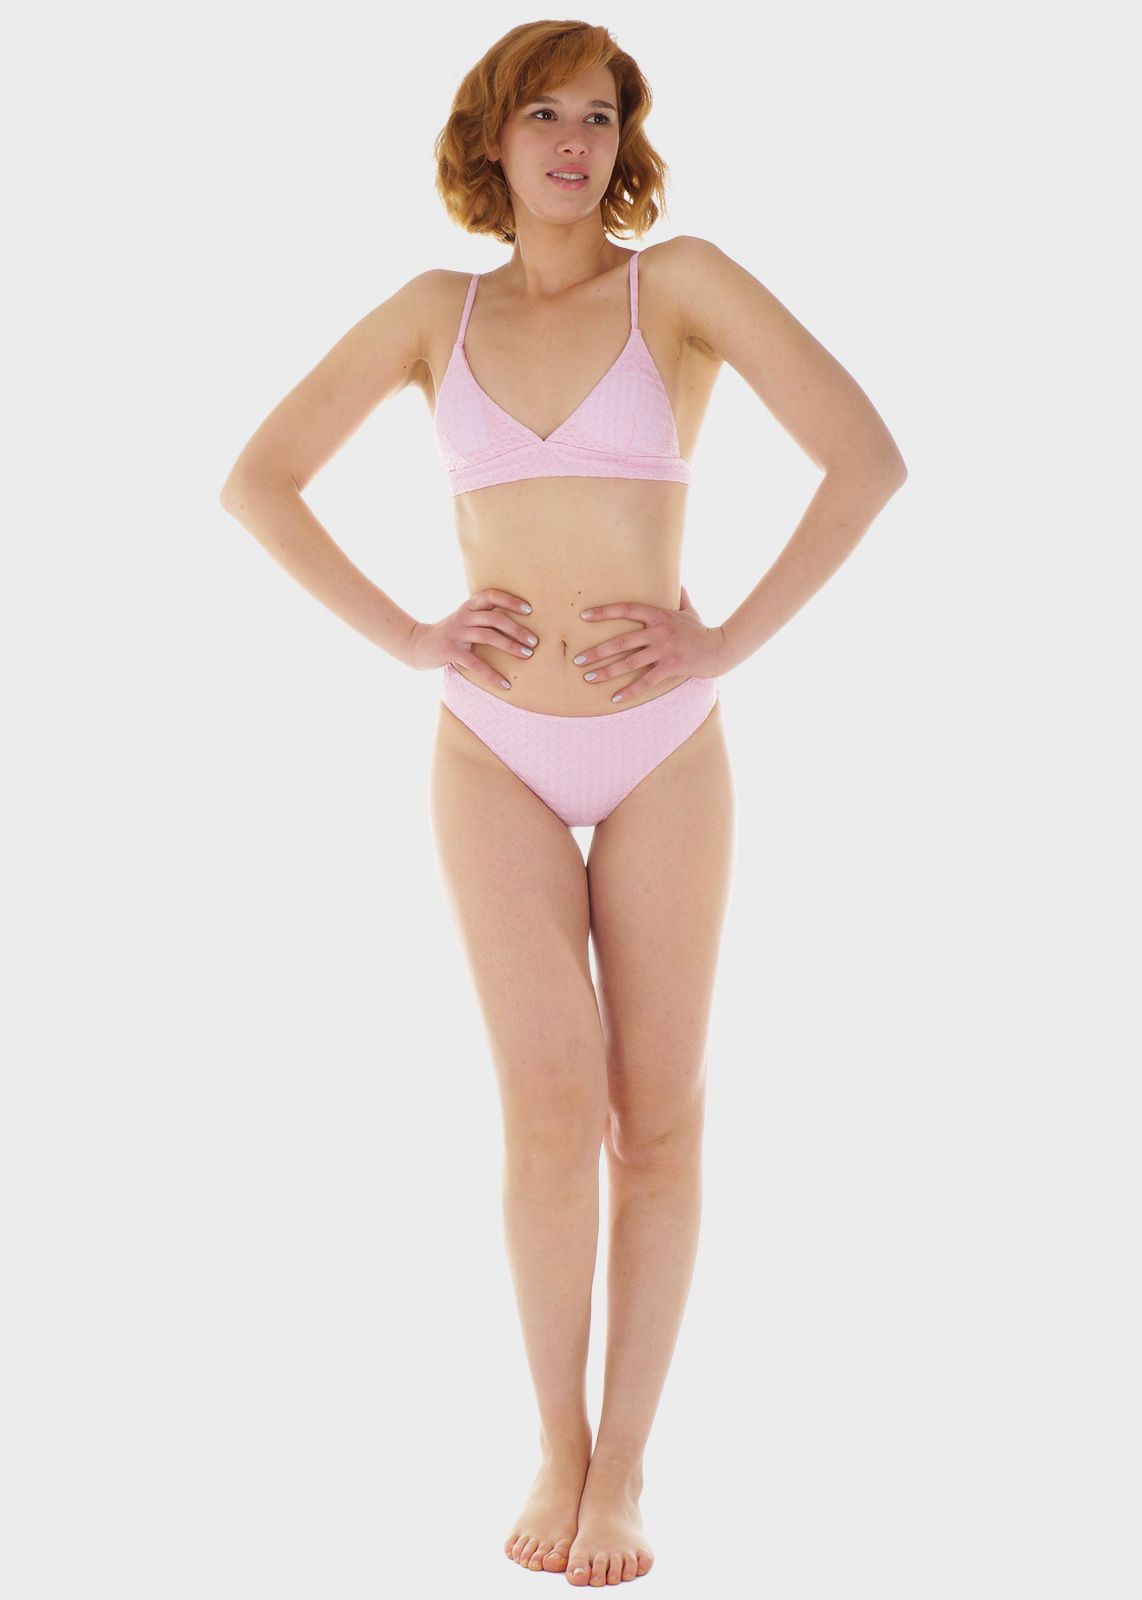 Γυναικείο σετ μαγιό bikini μονόχρωμο αποσπώμενη επένδυση slip κανονική γραμμή.Καλύπτει B Cup ΛΙΛΑ